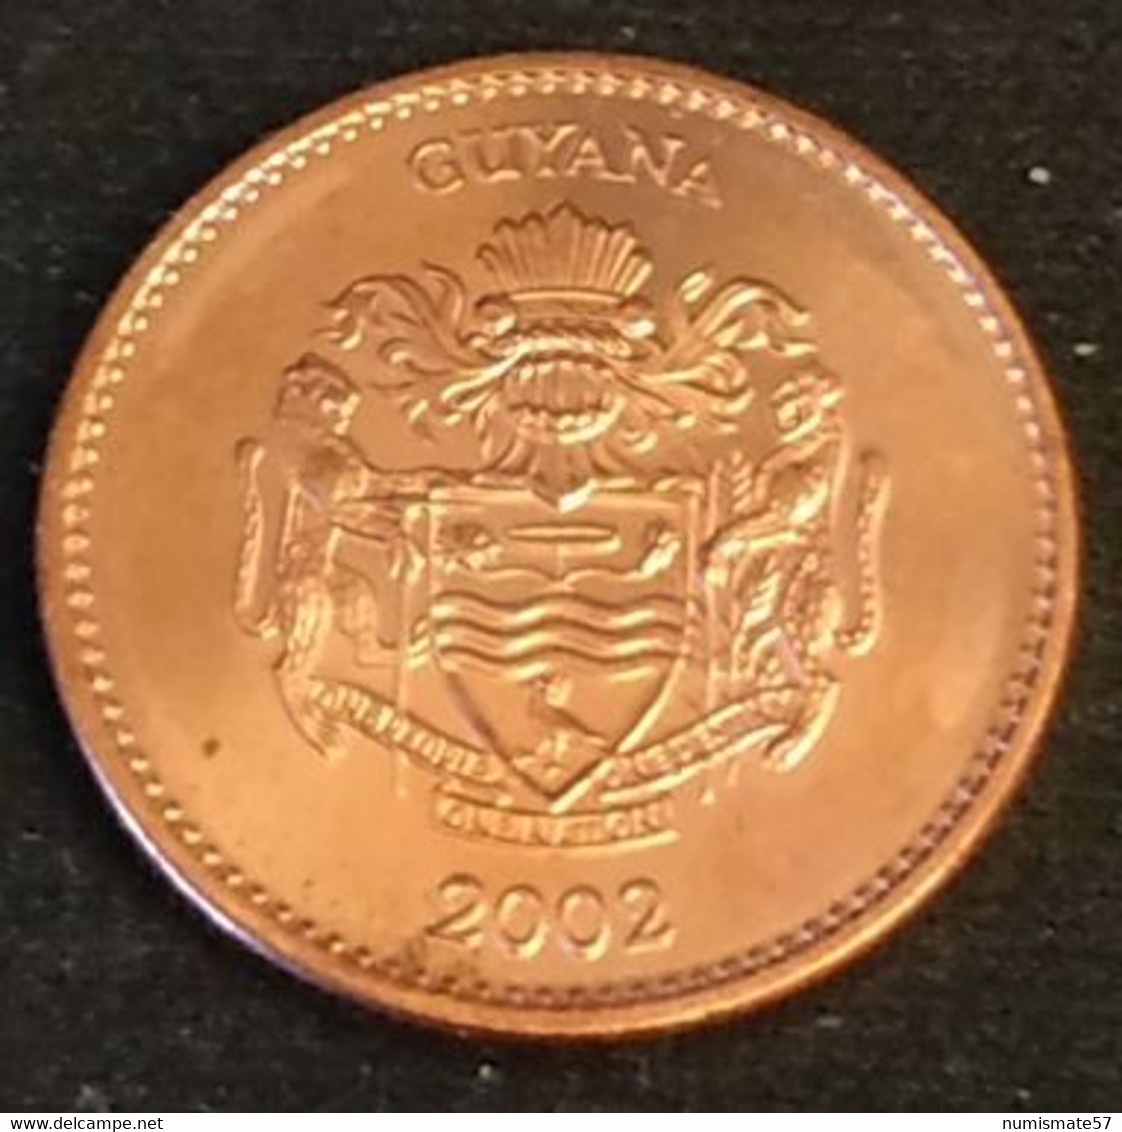 GUYANA - 1  DOLLAR 2002 - KM 50 - RICE HARVEST - Guyana